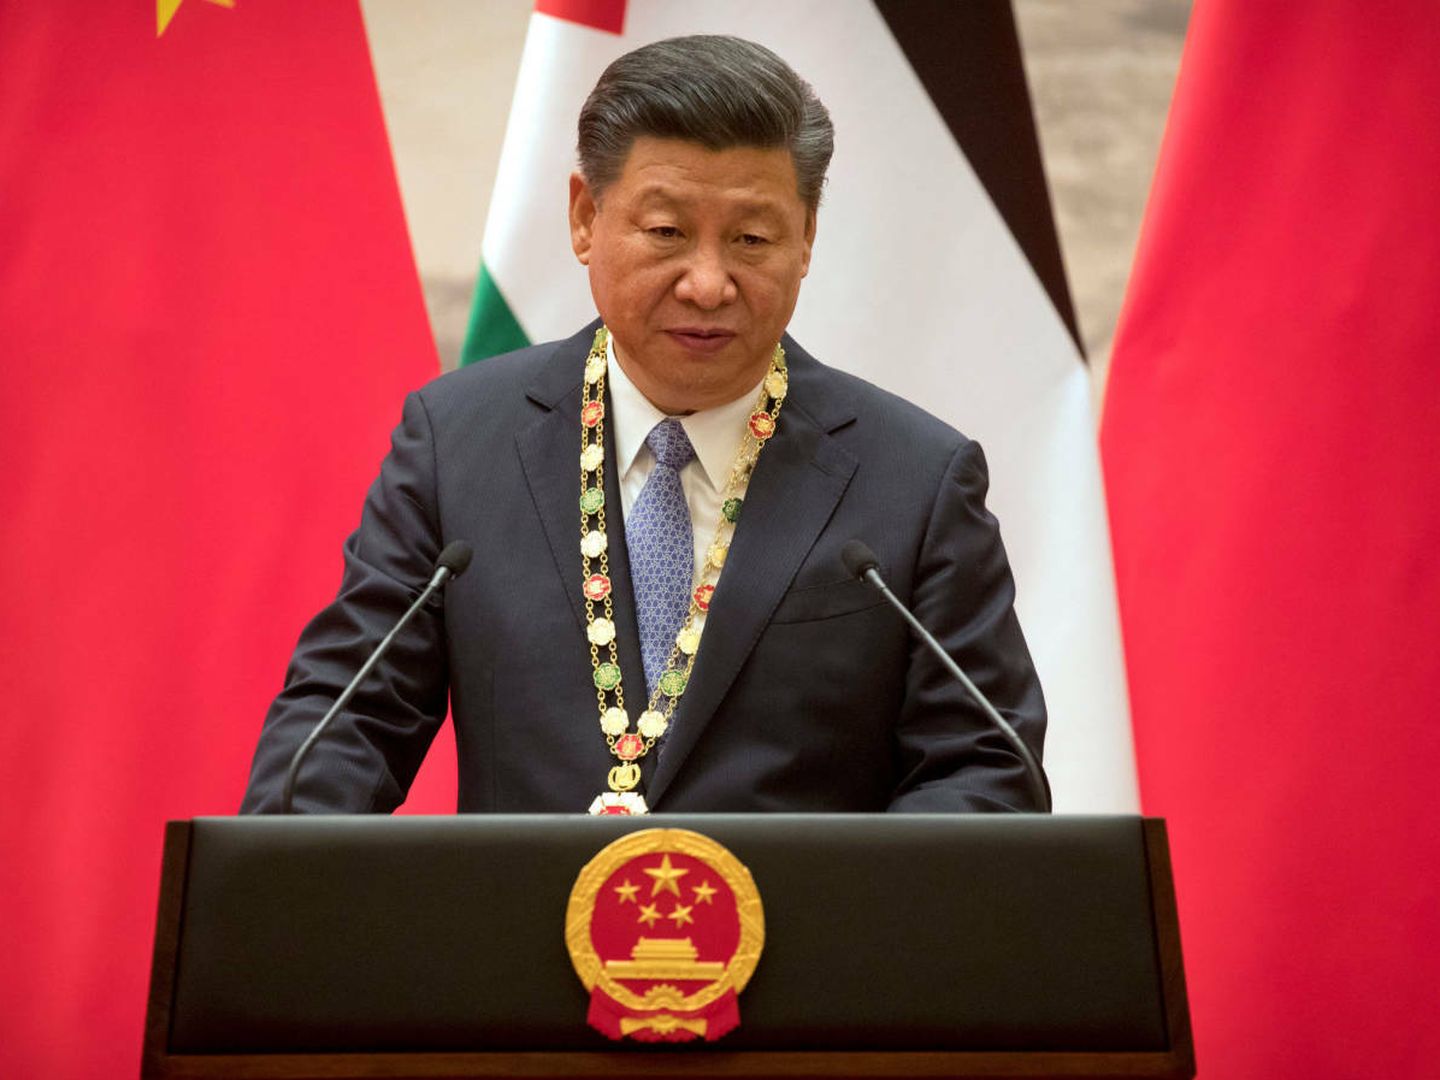 El presidente chino, Xi Jinping, durante una reciente ceremonia en Pekín. (Reuters)